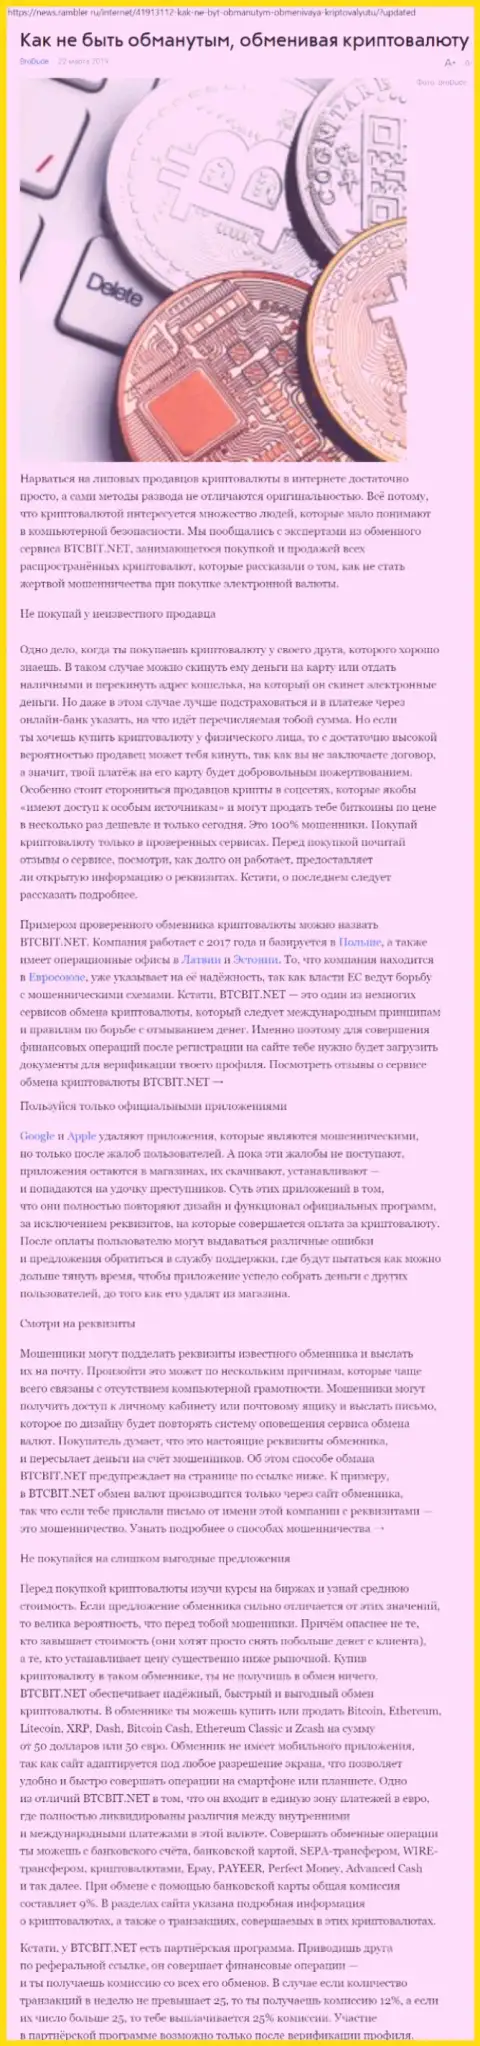 Статья об обменнике BTCBit на news rambler ru